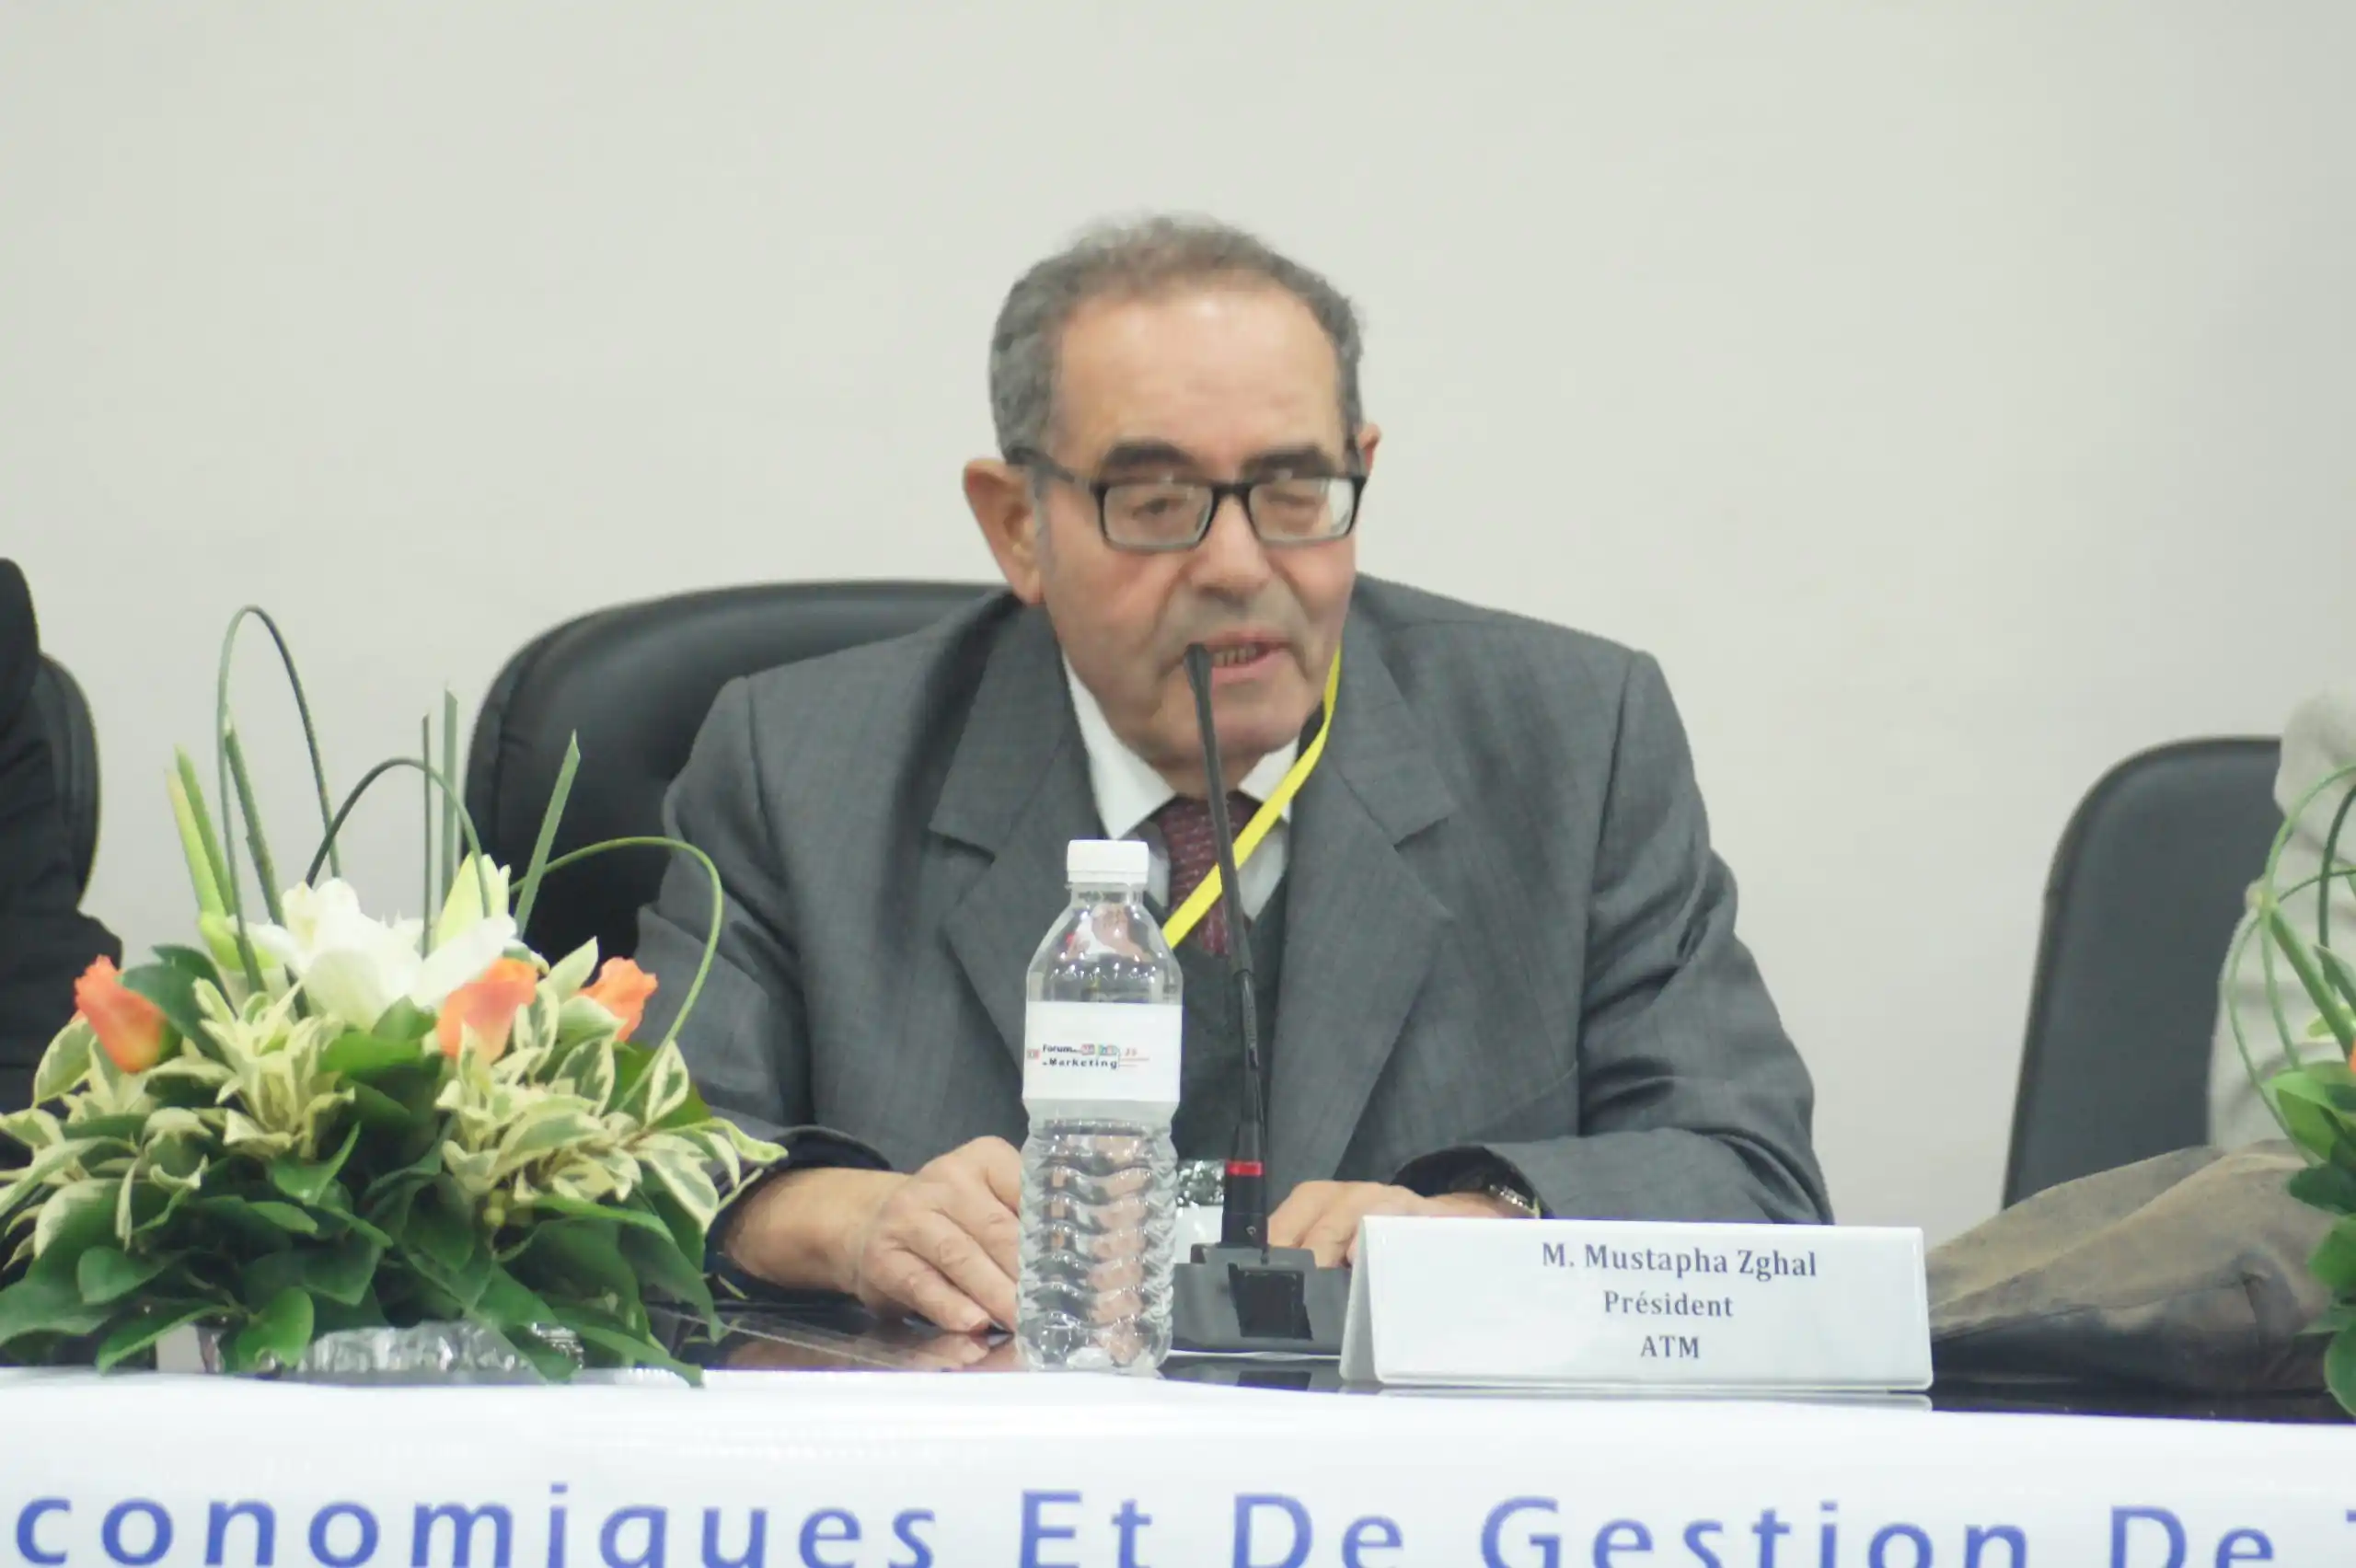 FMM-2015_-Allocution-du-president-de-l_Association-Tunisienne-de-Marketing-partenaire-officiel-FMM-2015-feu-Mustapha-Zghal-min-scaled